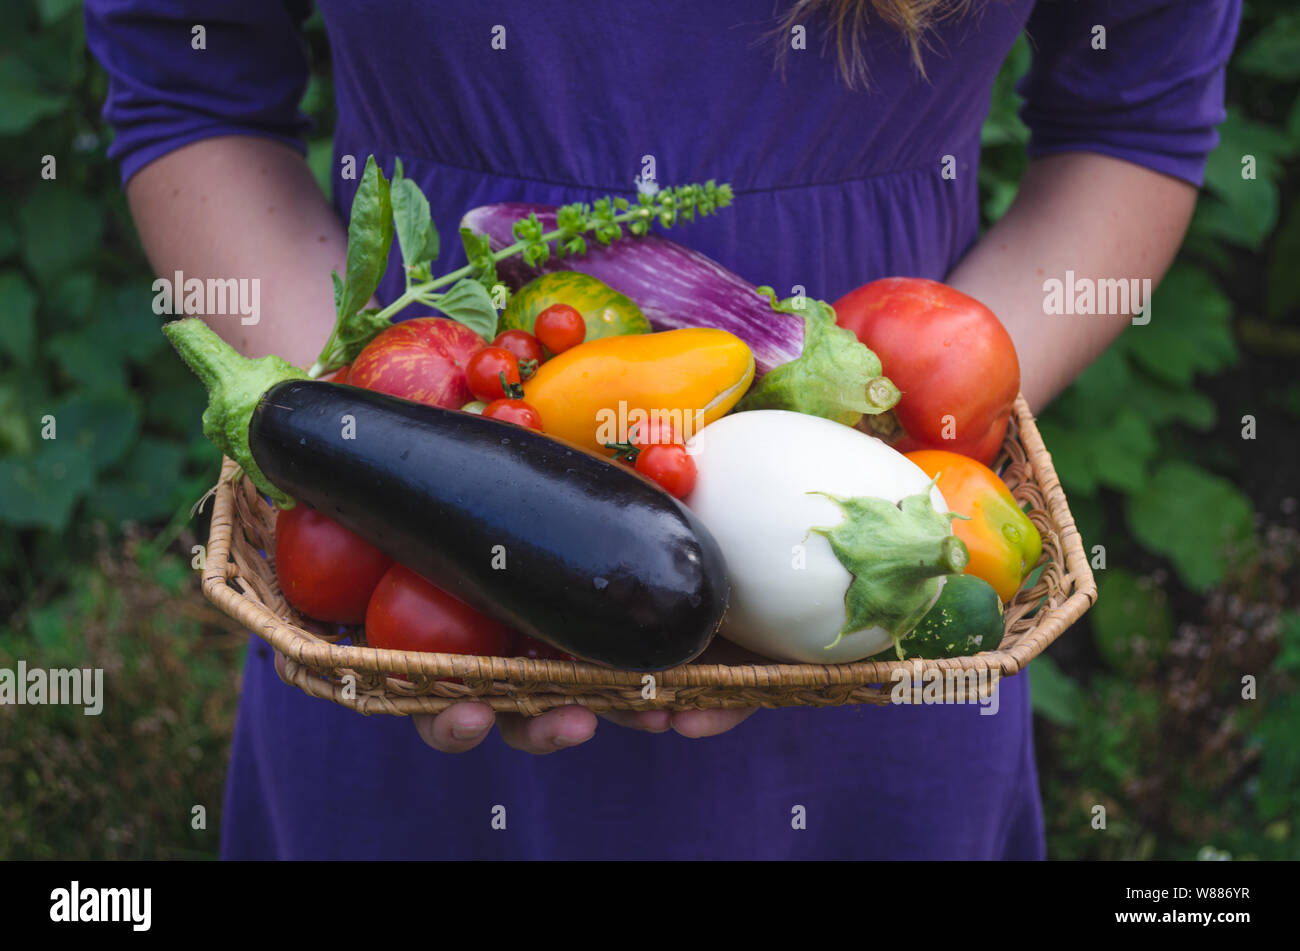 È una ragazza che trasportano appena raccolte eco Organici ortaggi coltivati nel giardino. Egglants organico o melanzane, diversi tipi di pomodori e basilico. Foto Stock